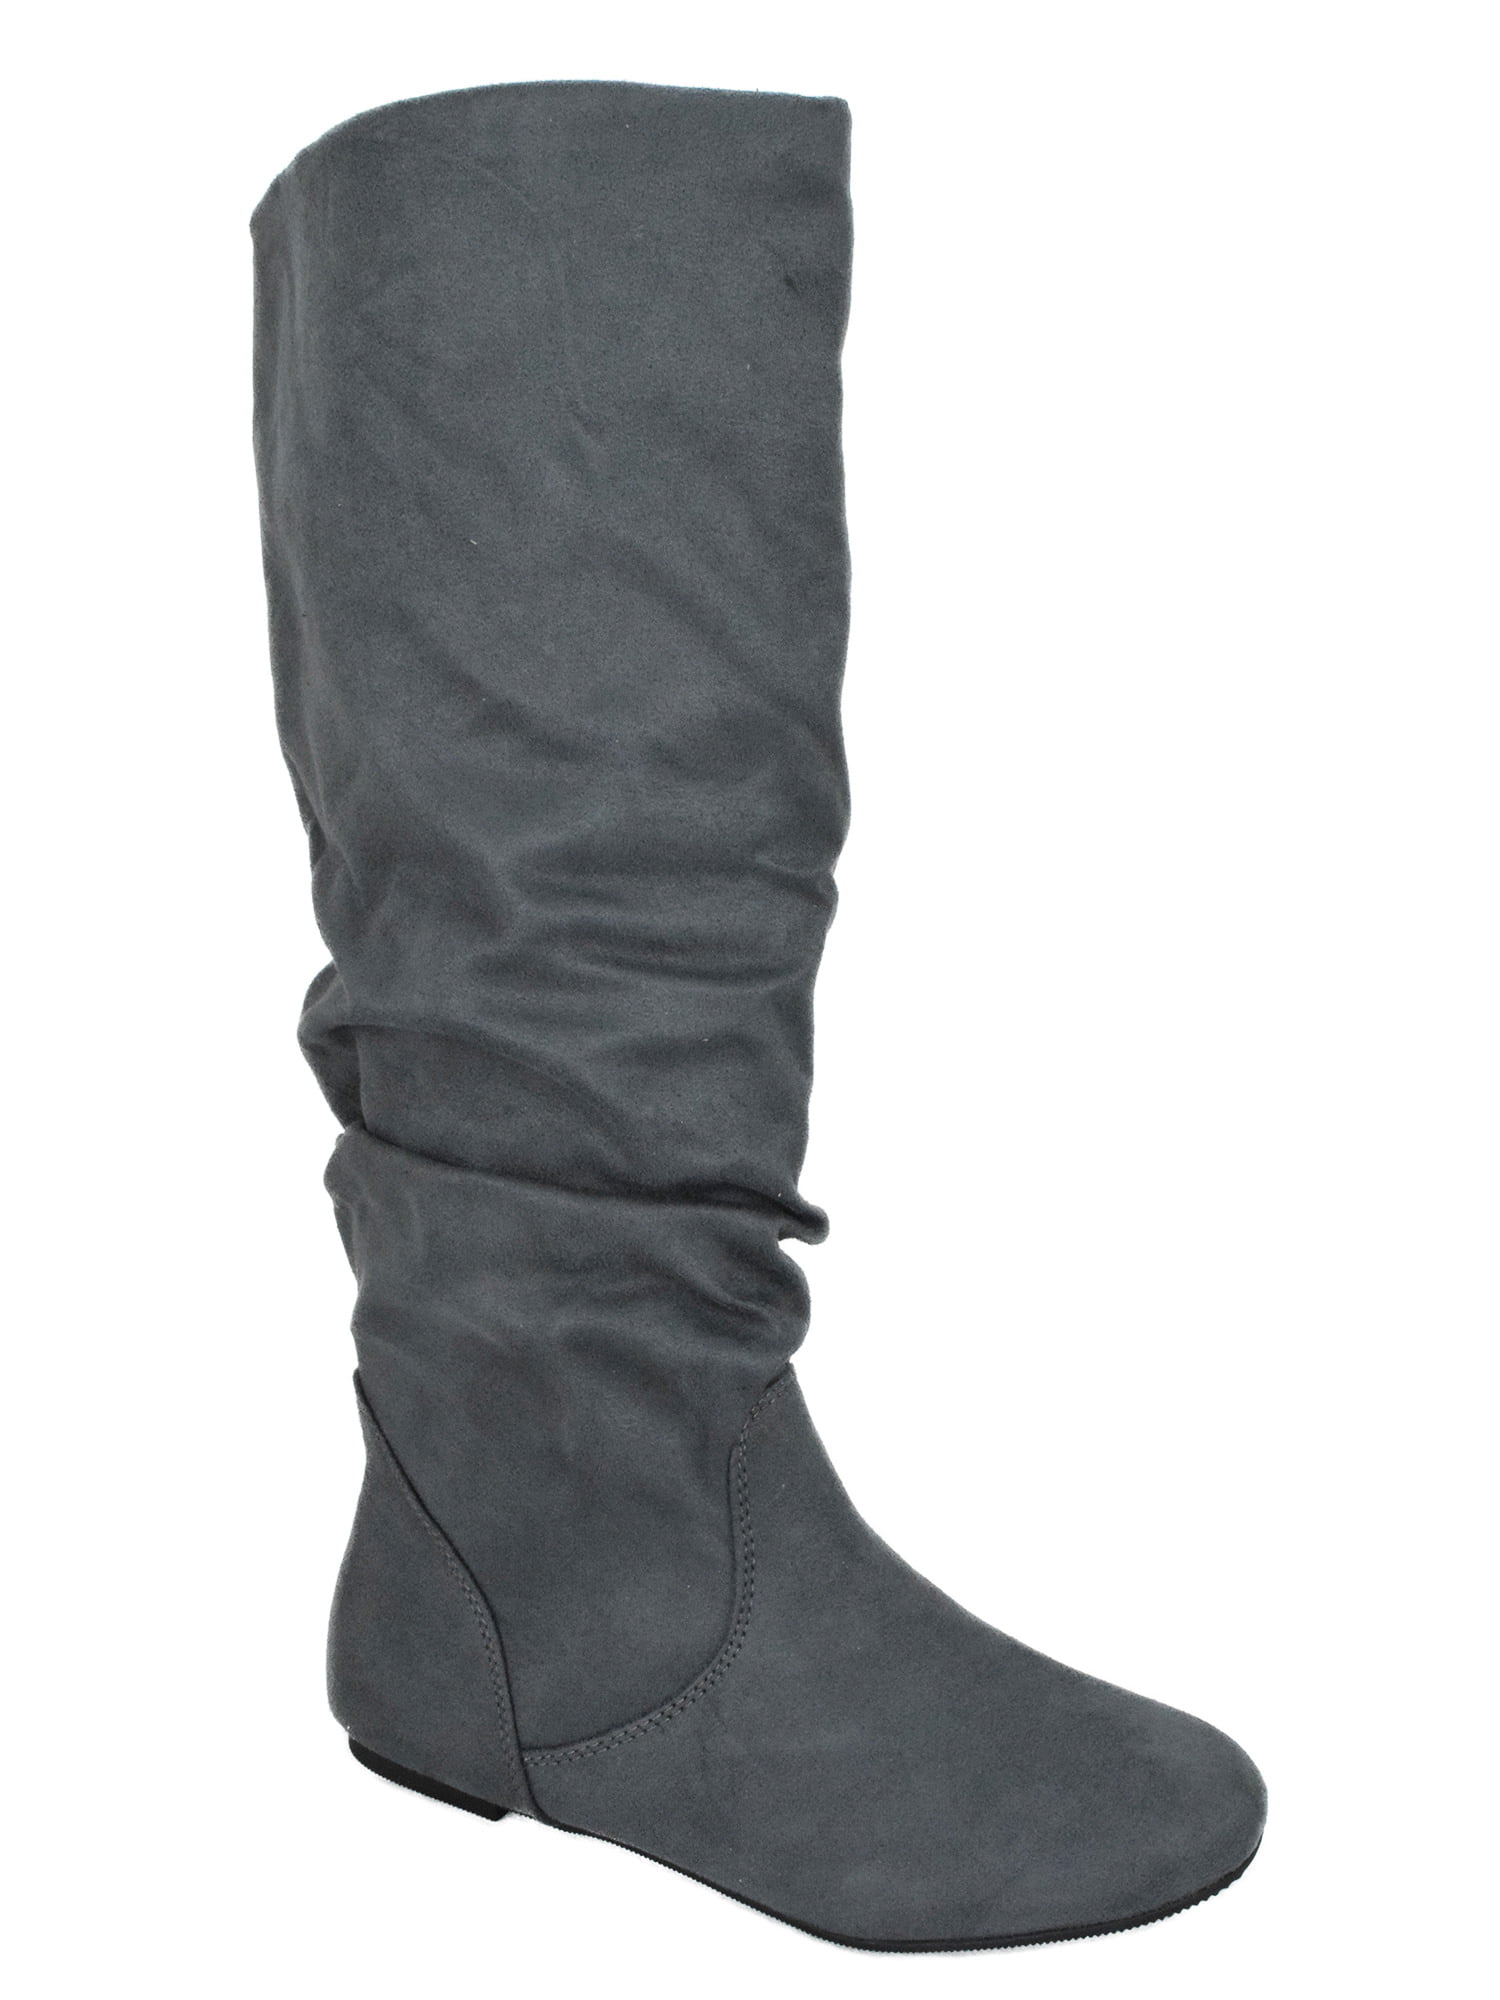 ZULUU Gray Soda Brand Knee High Women Basic Boots Flat Slouchy Boots ...